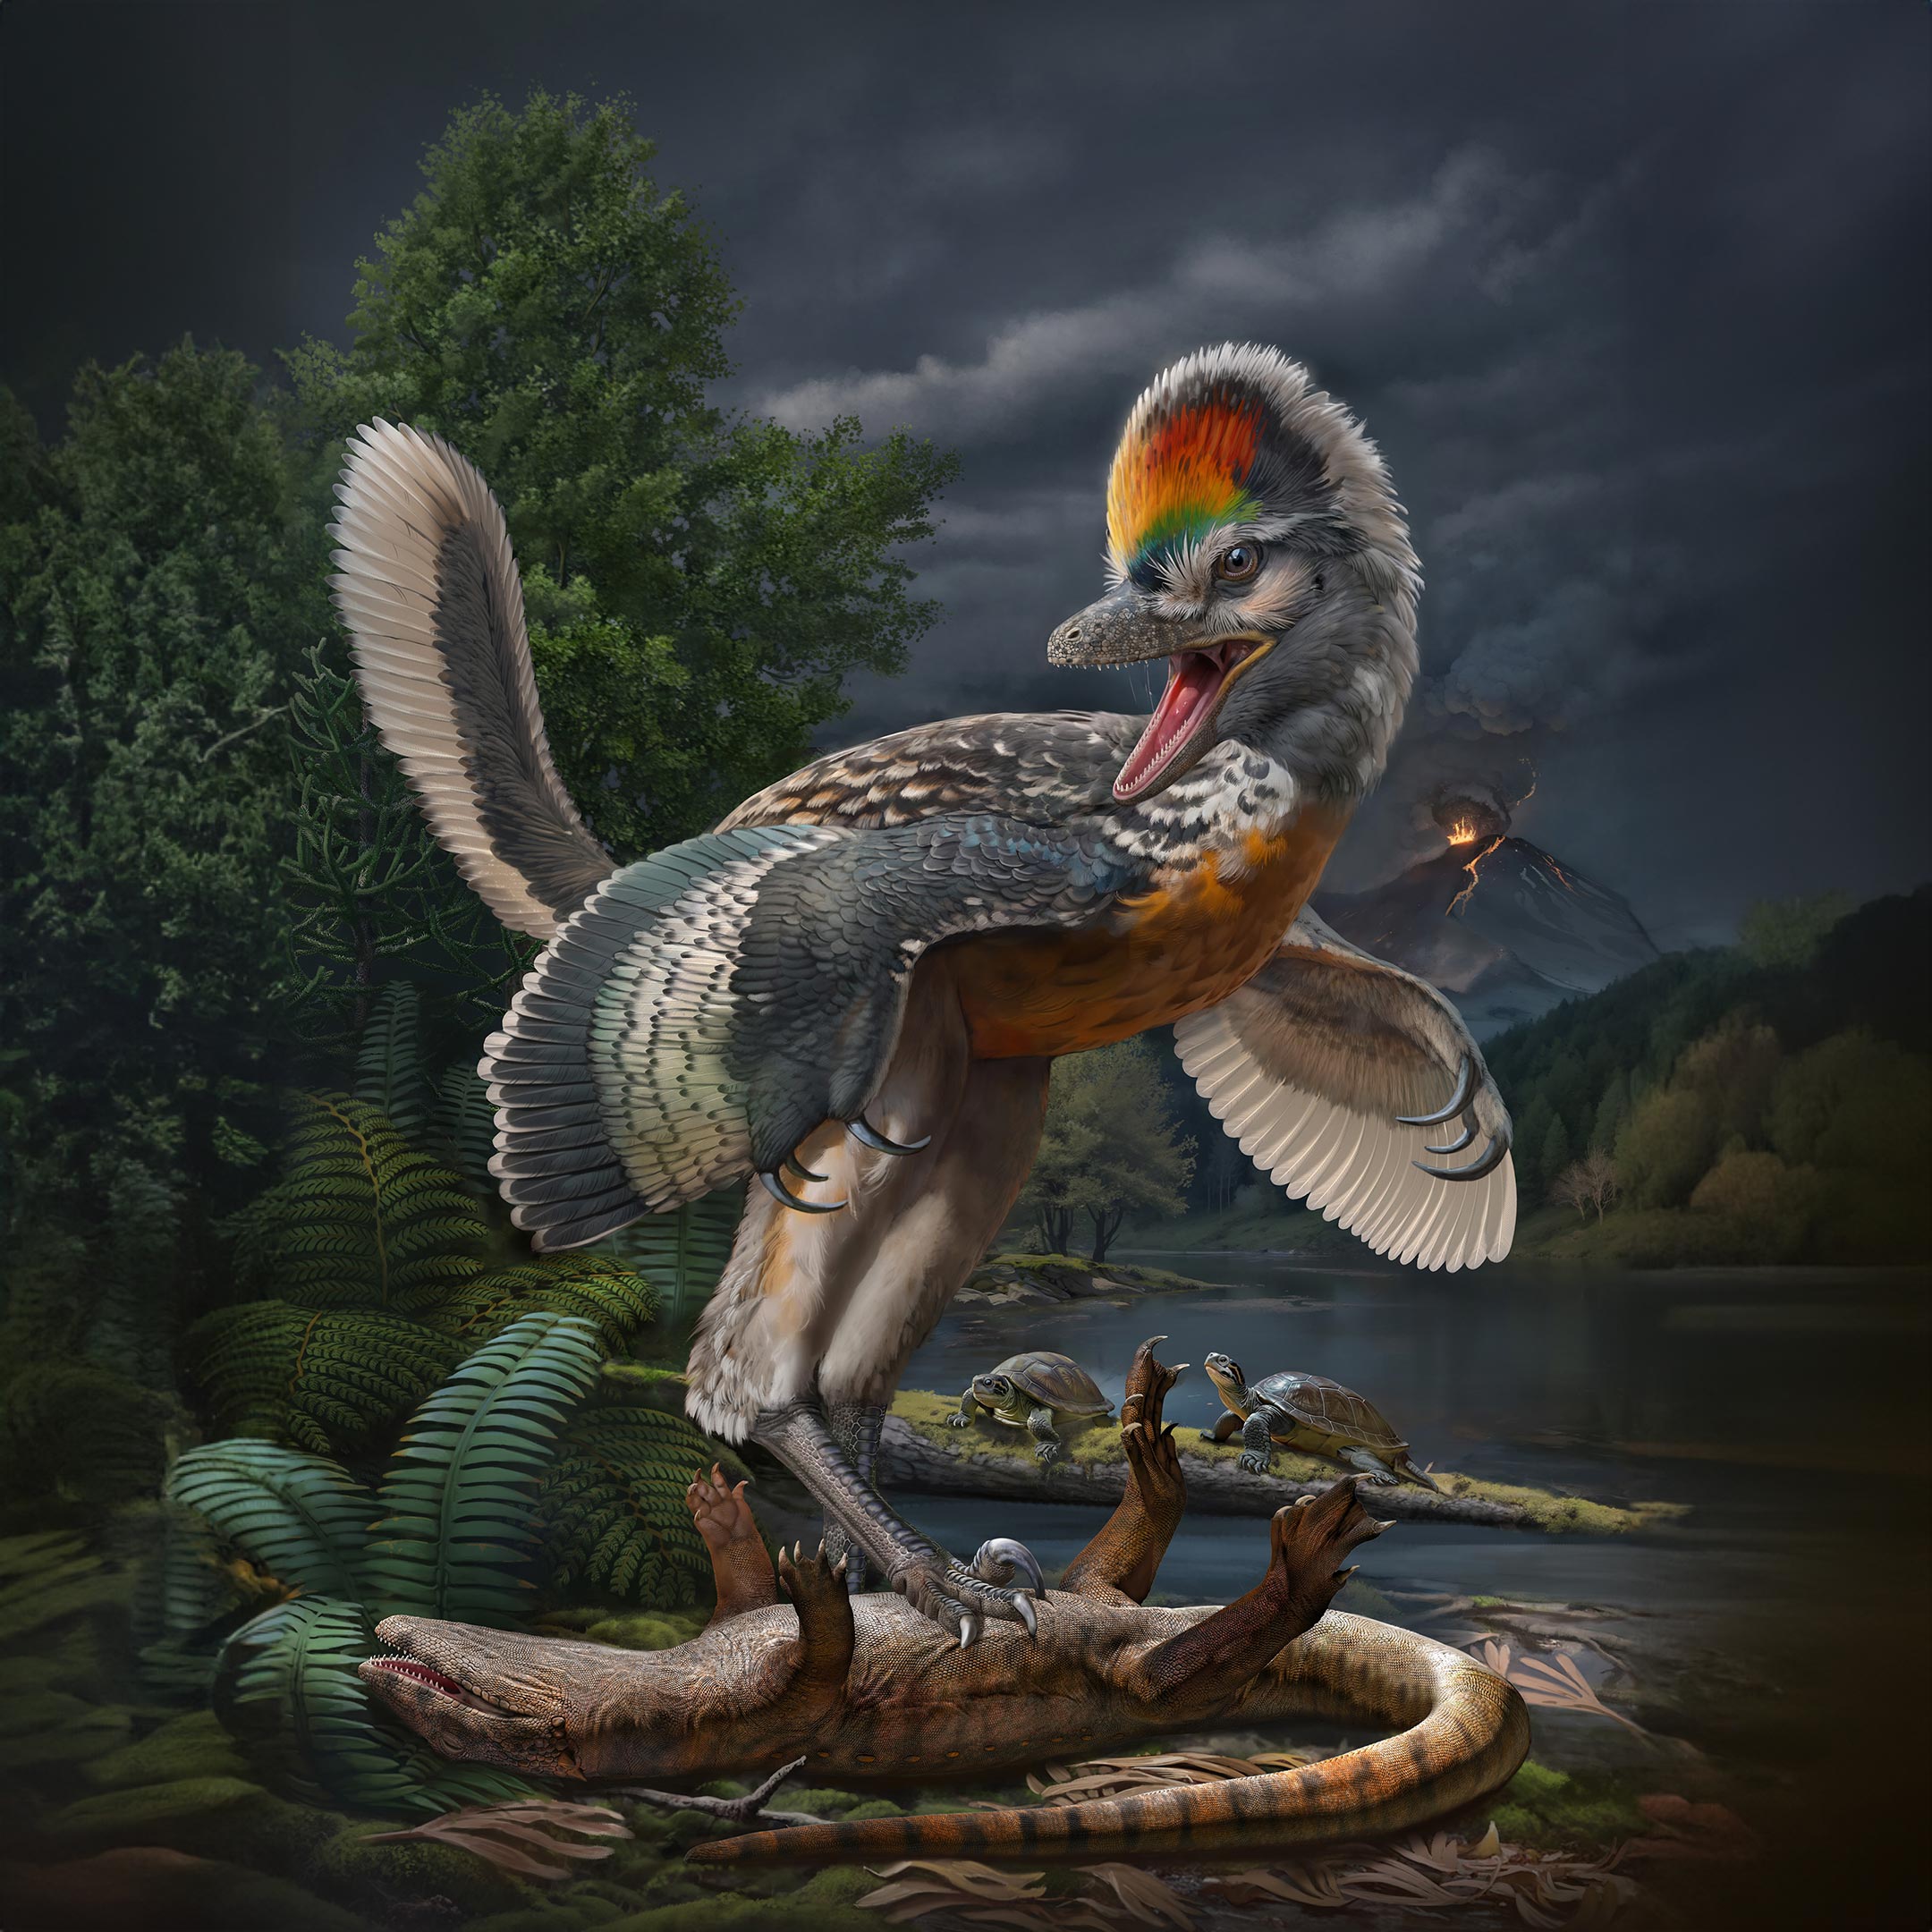 Paleontologlar kuşa benzeyen yeni ve tuhaf bir dinozor türü keşfettiler